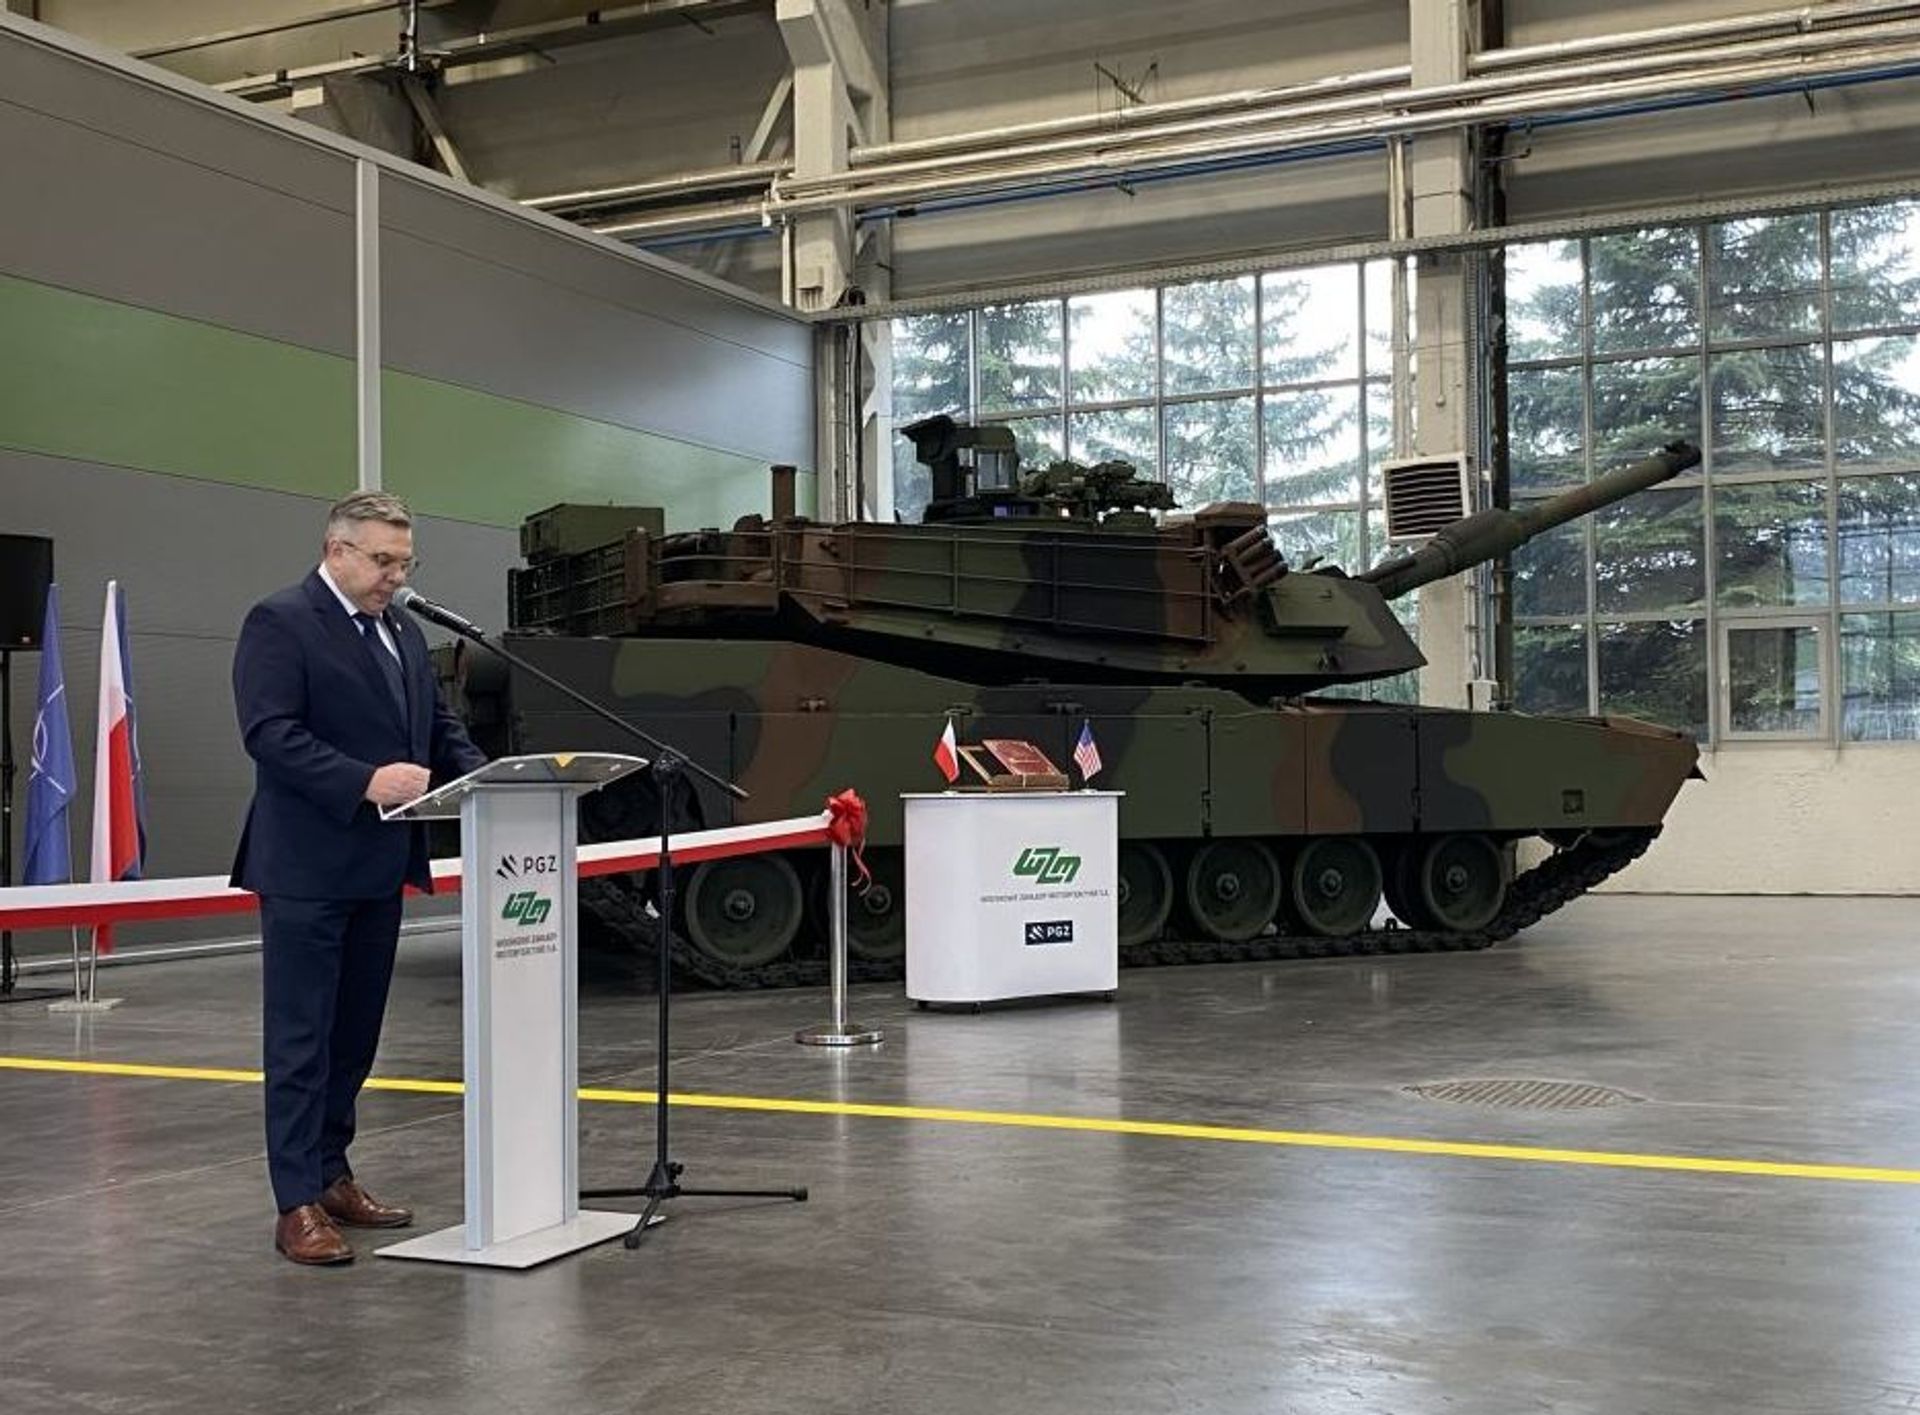 W Poznaniu powstało Regionalne Centrum Kompetencyjne czołgów Abrams